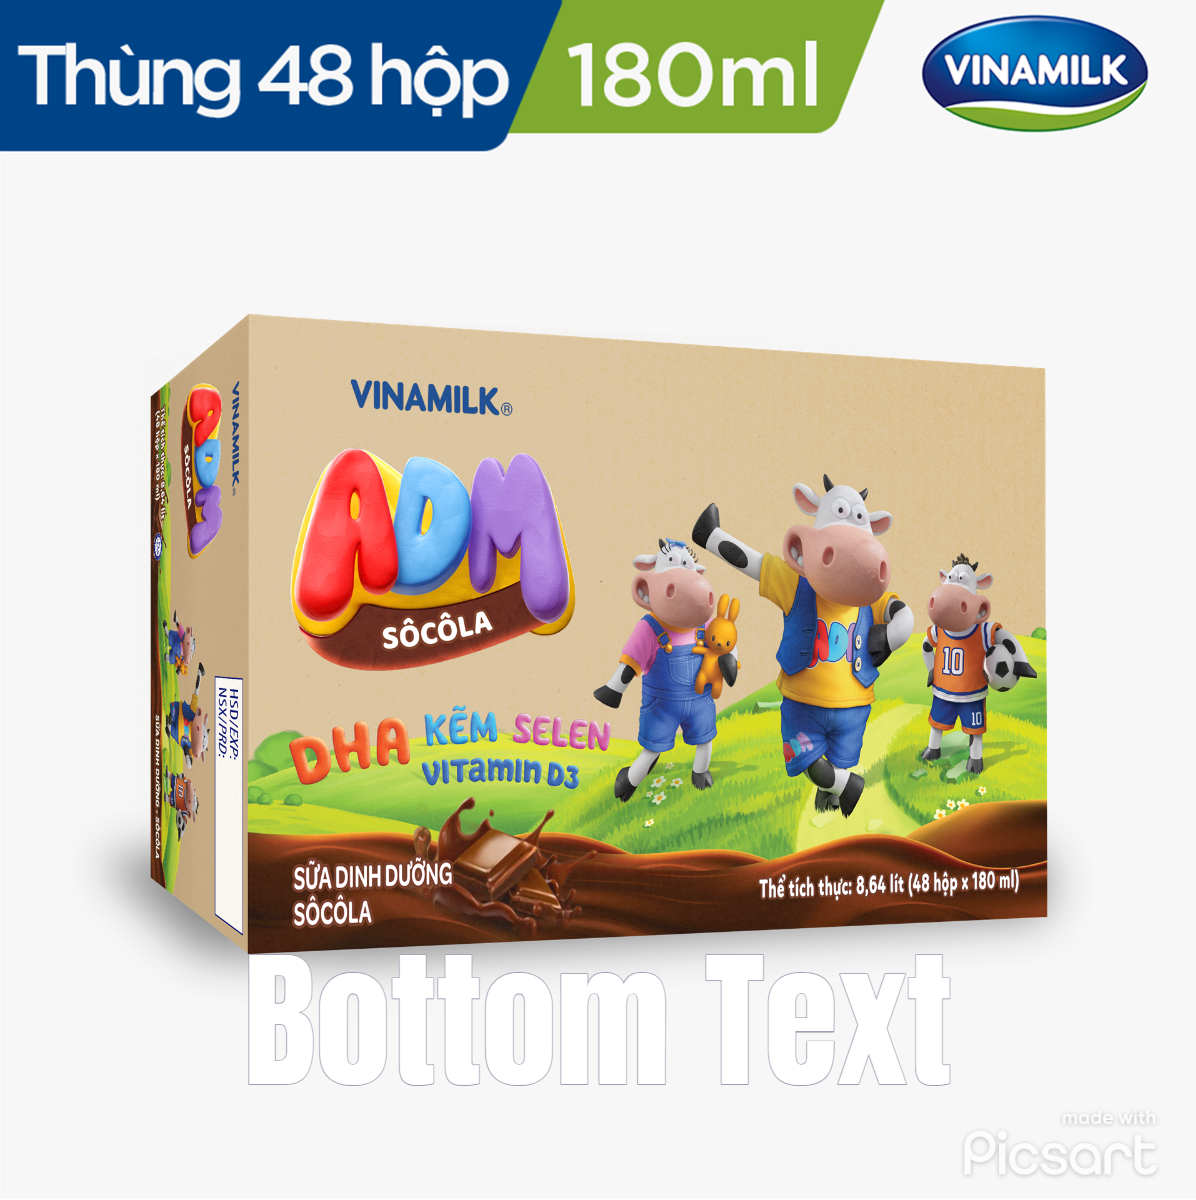 Sữa dinh dưỡng Sôcôla Vinamilk ADM - Thùng 48 hộp 180ml